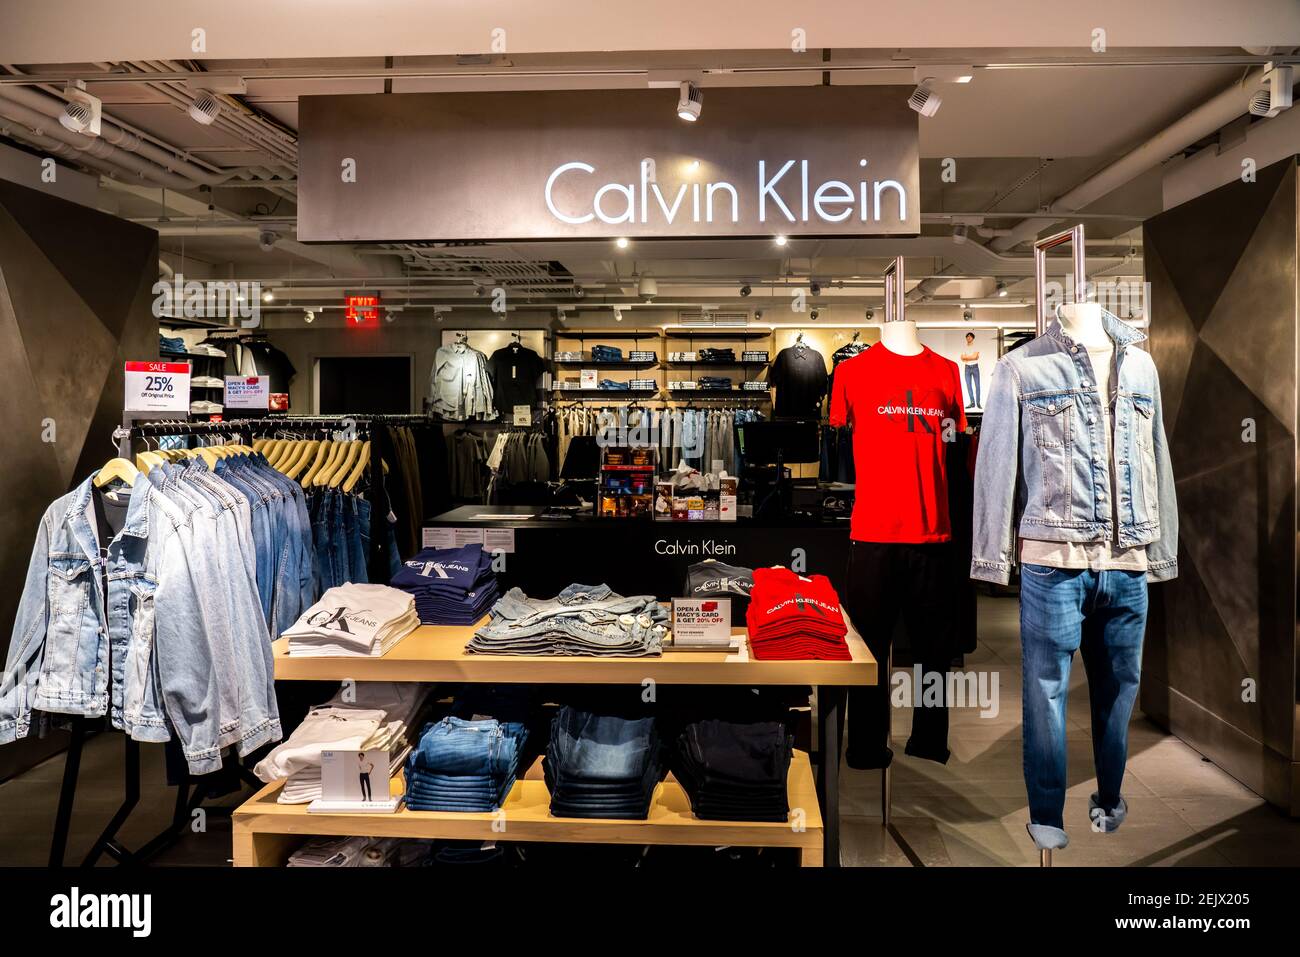 Calvin Klein Galleria Mall Retail, 58% OFF | evopower.co.uk